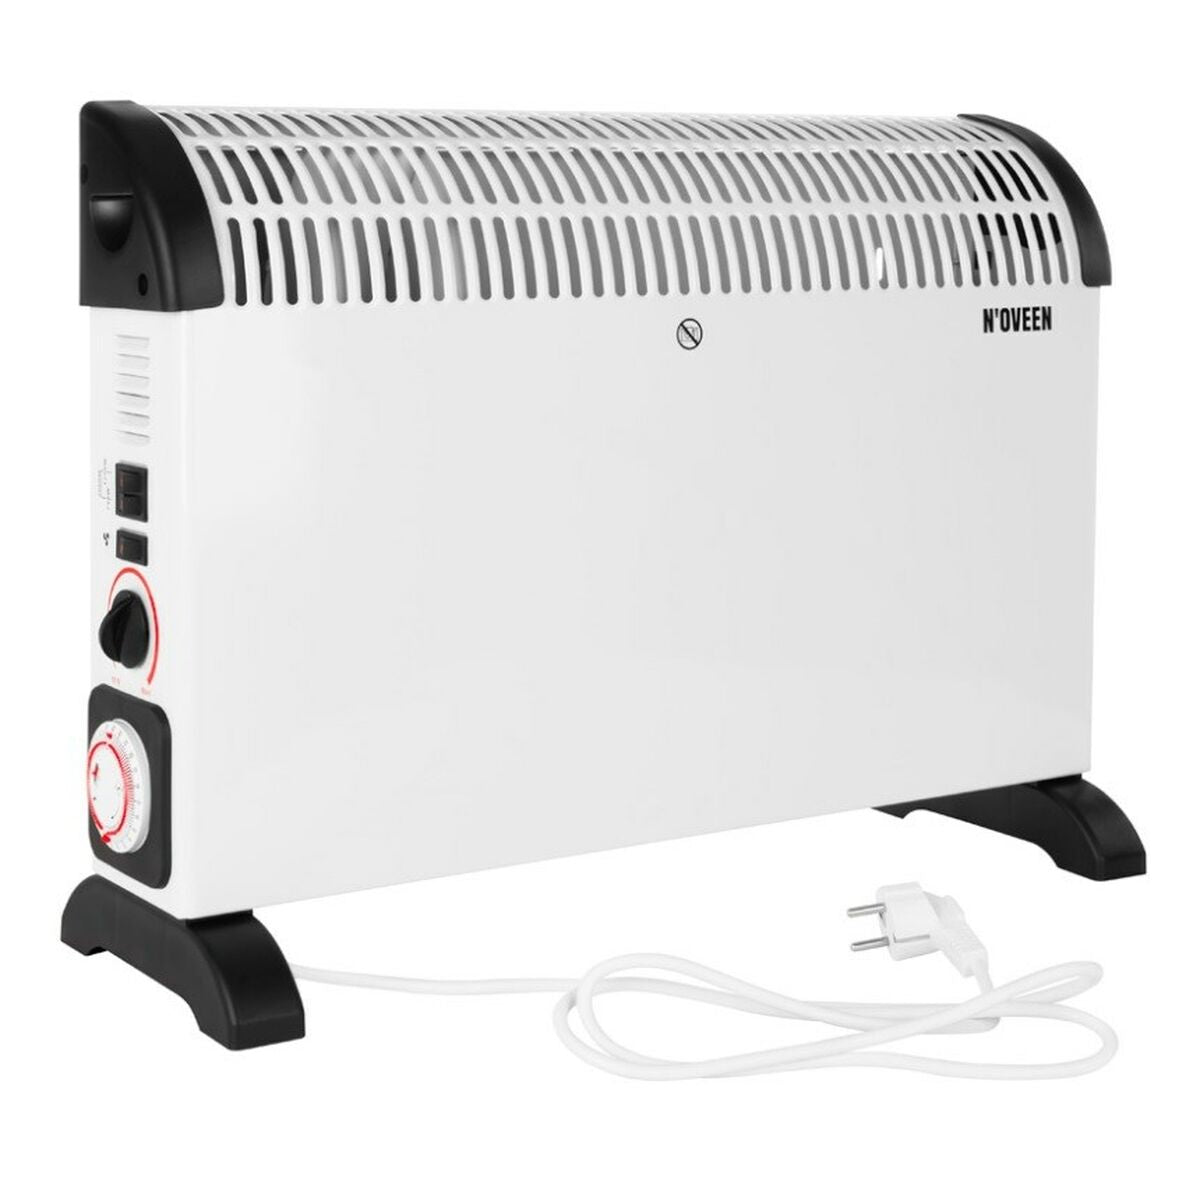 Verwarming N'oveen CH-6000                         Wit 2000 W